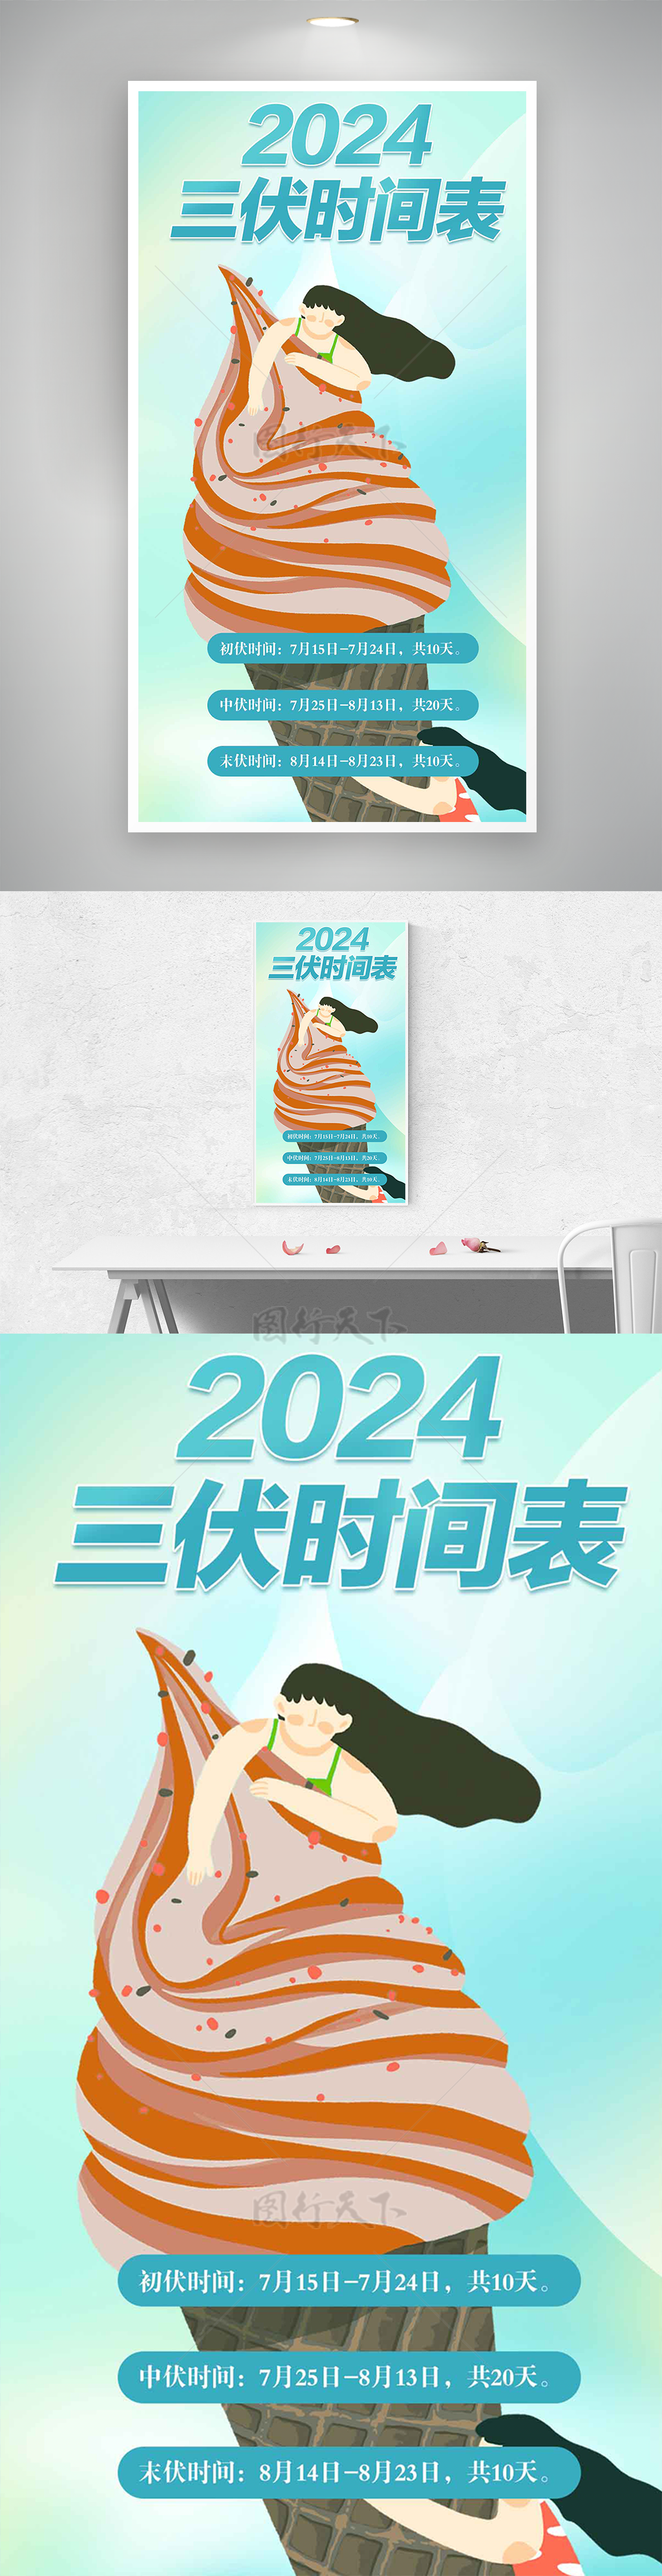 卡通冰淇淋2024三伏天时间表海报